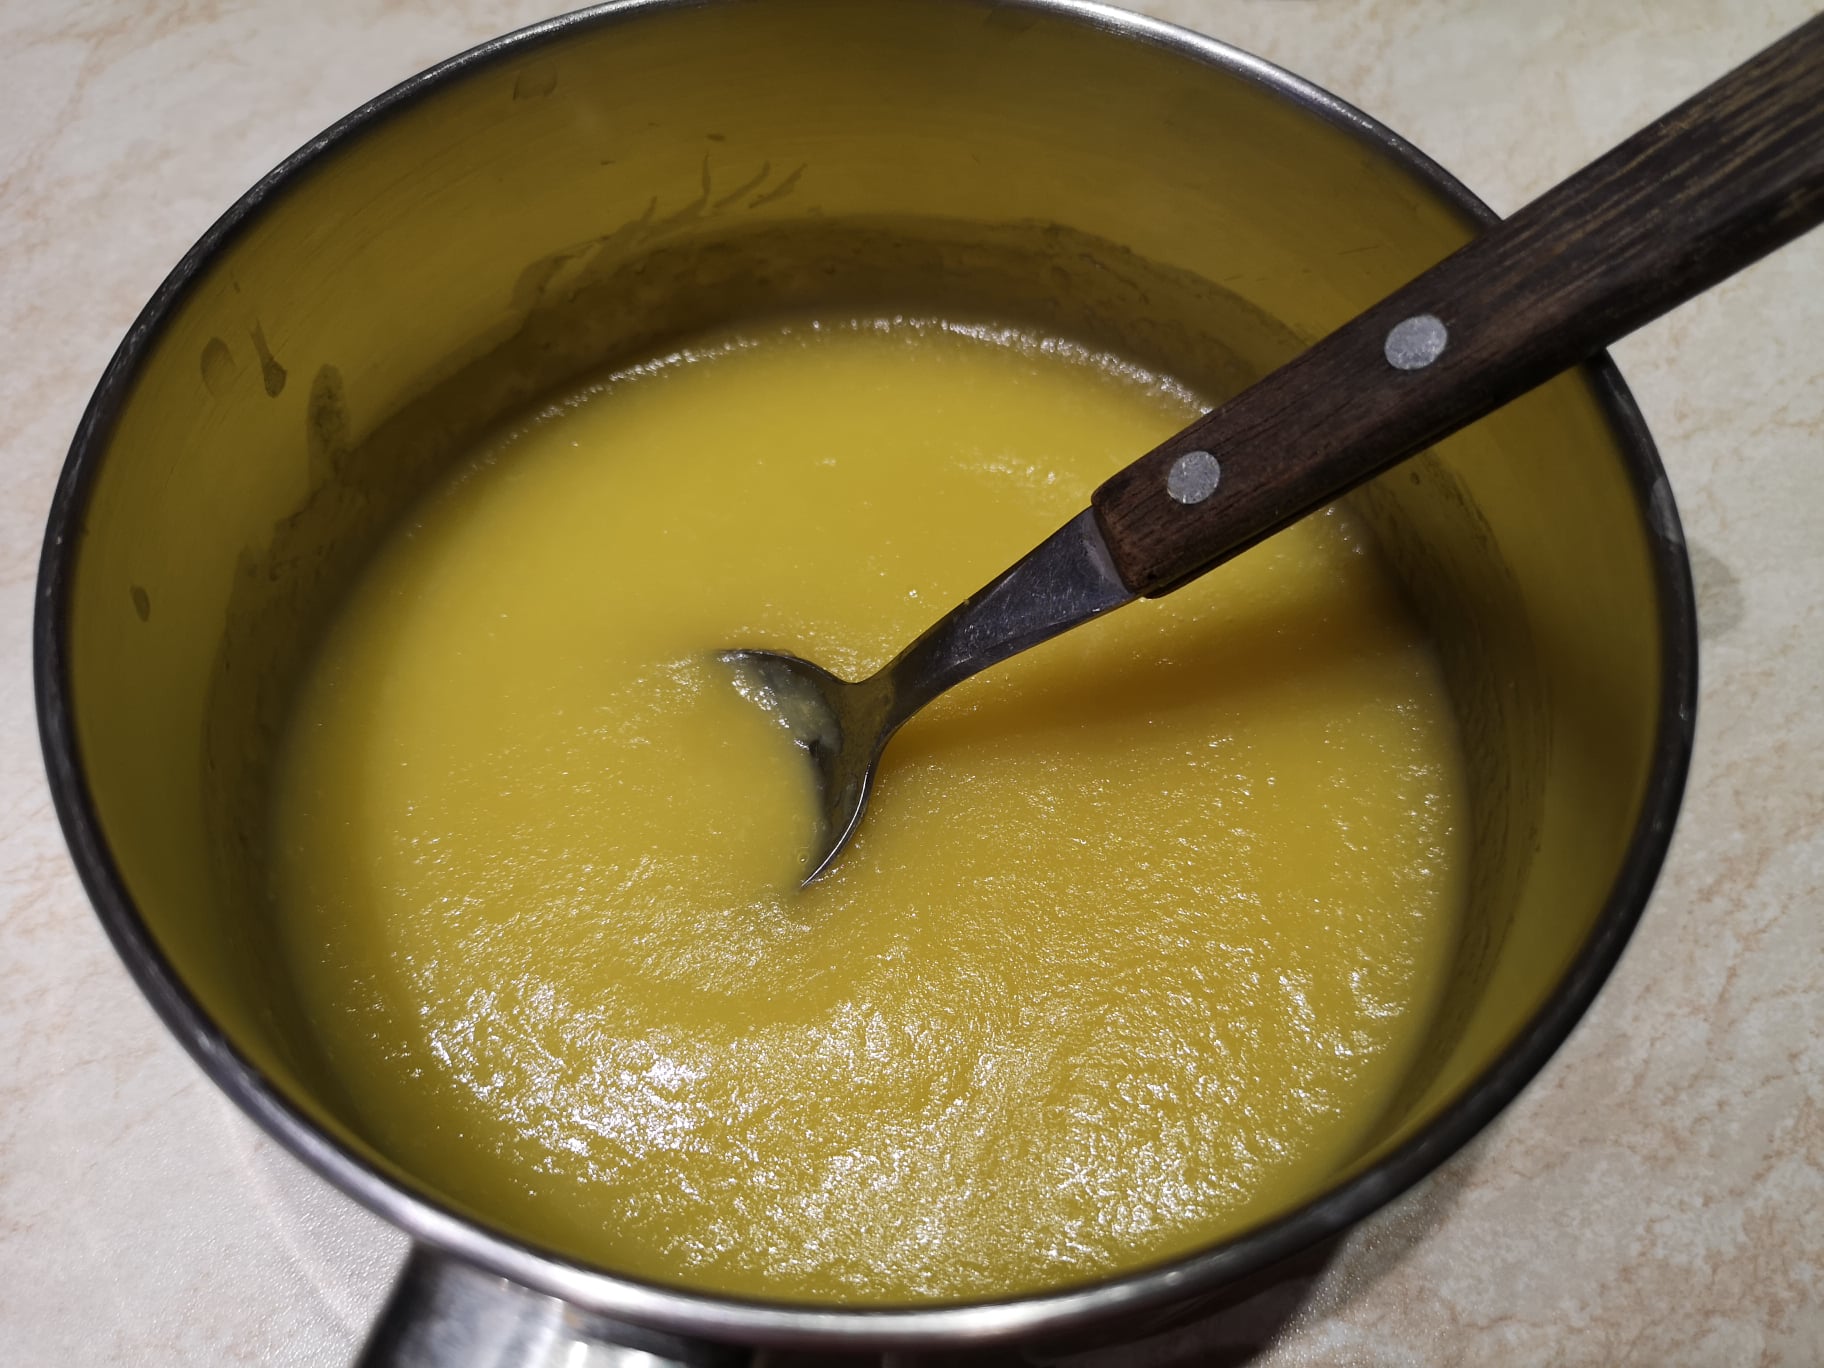 Desert cheesecake cu mango (fara coacere)